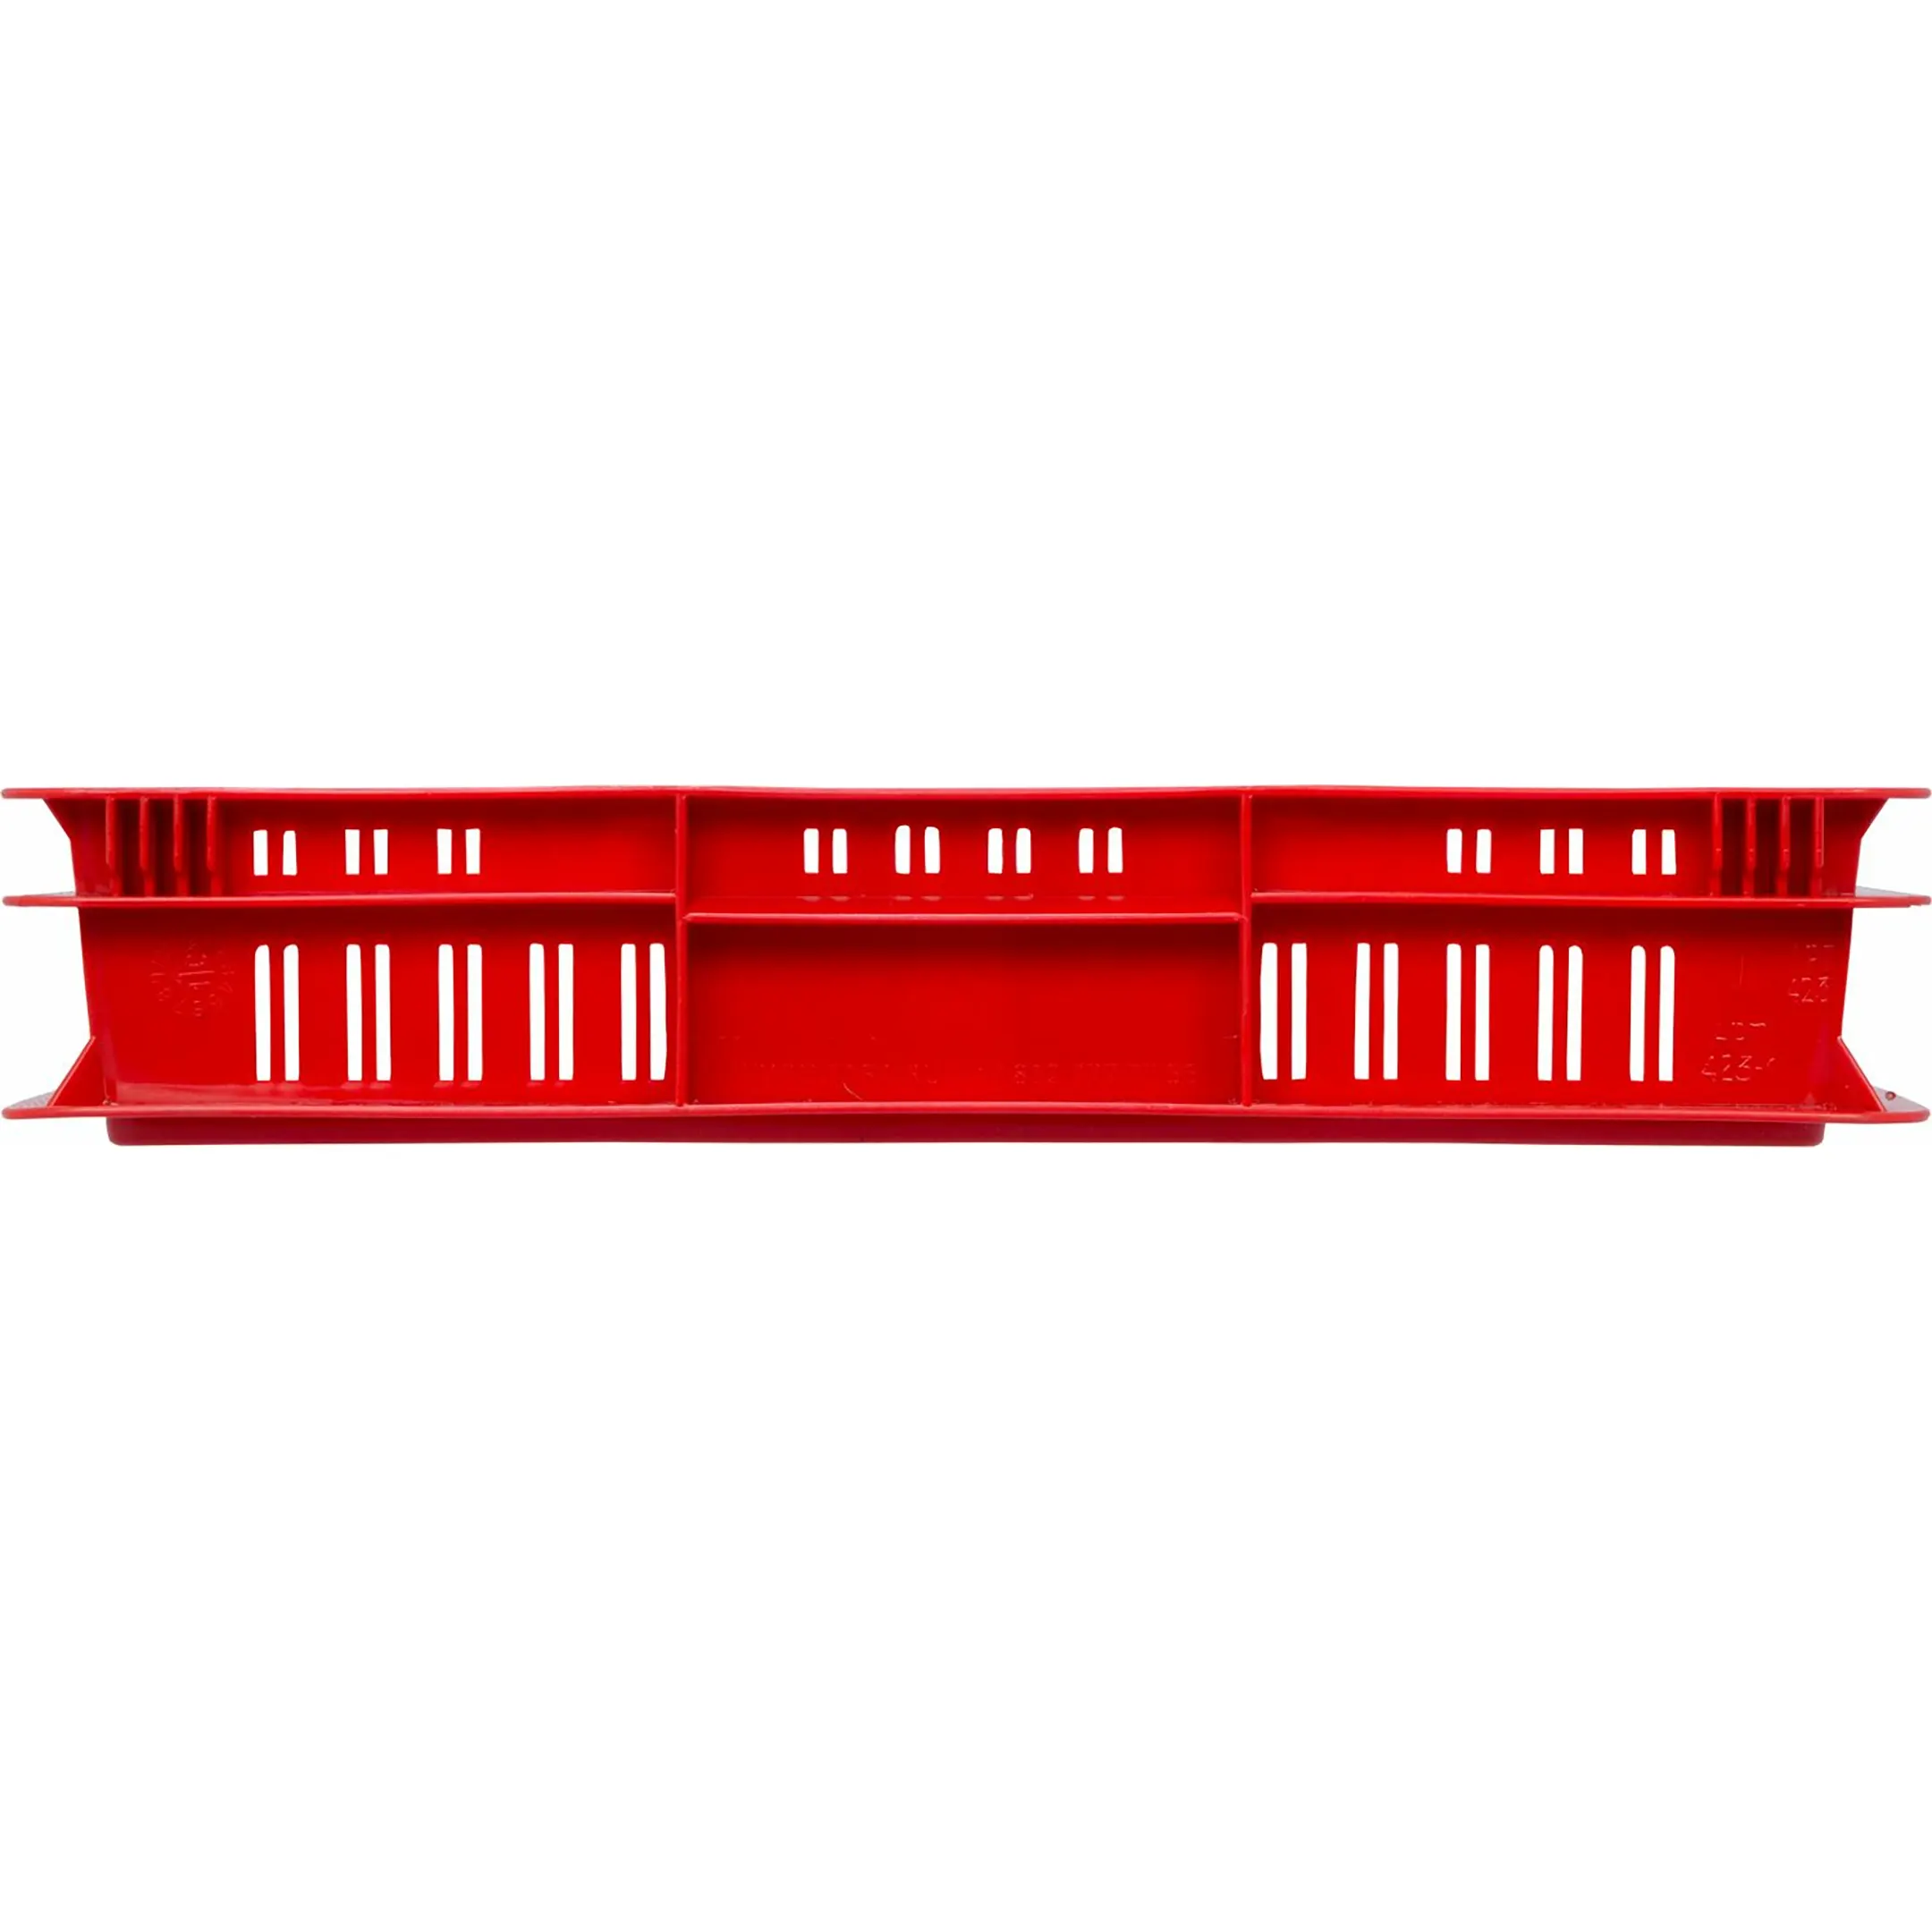 Ящик п/э 600х400х75 дно сплошное, стенки перфорированные арт. 423-1, без крышки (Красный)